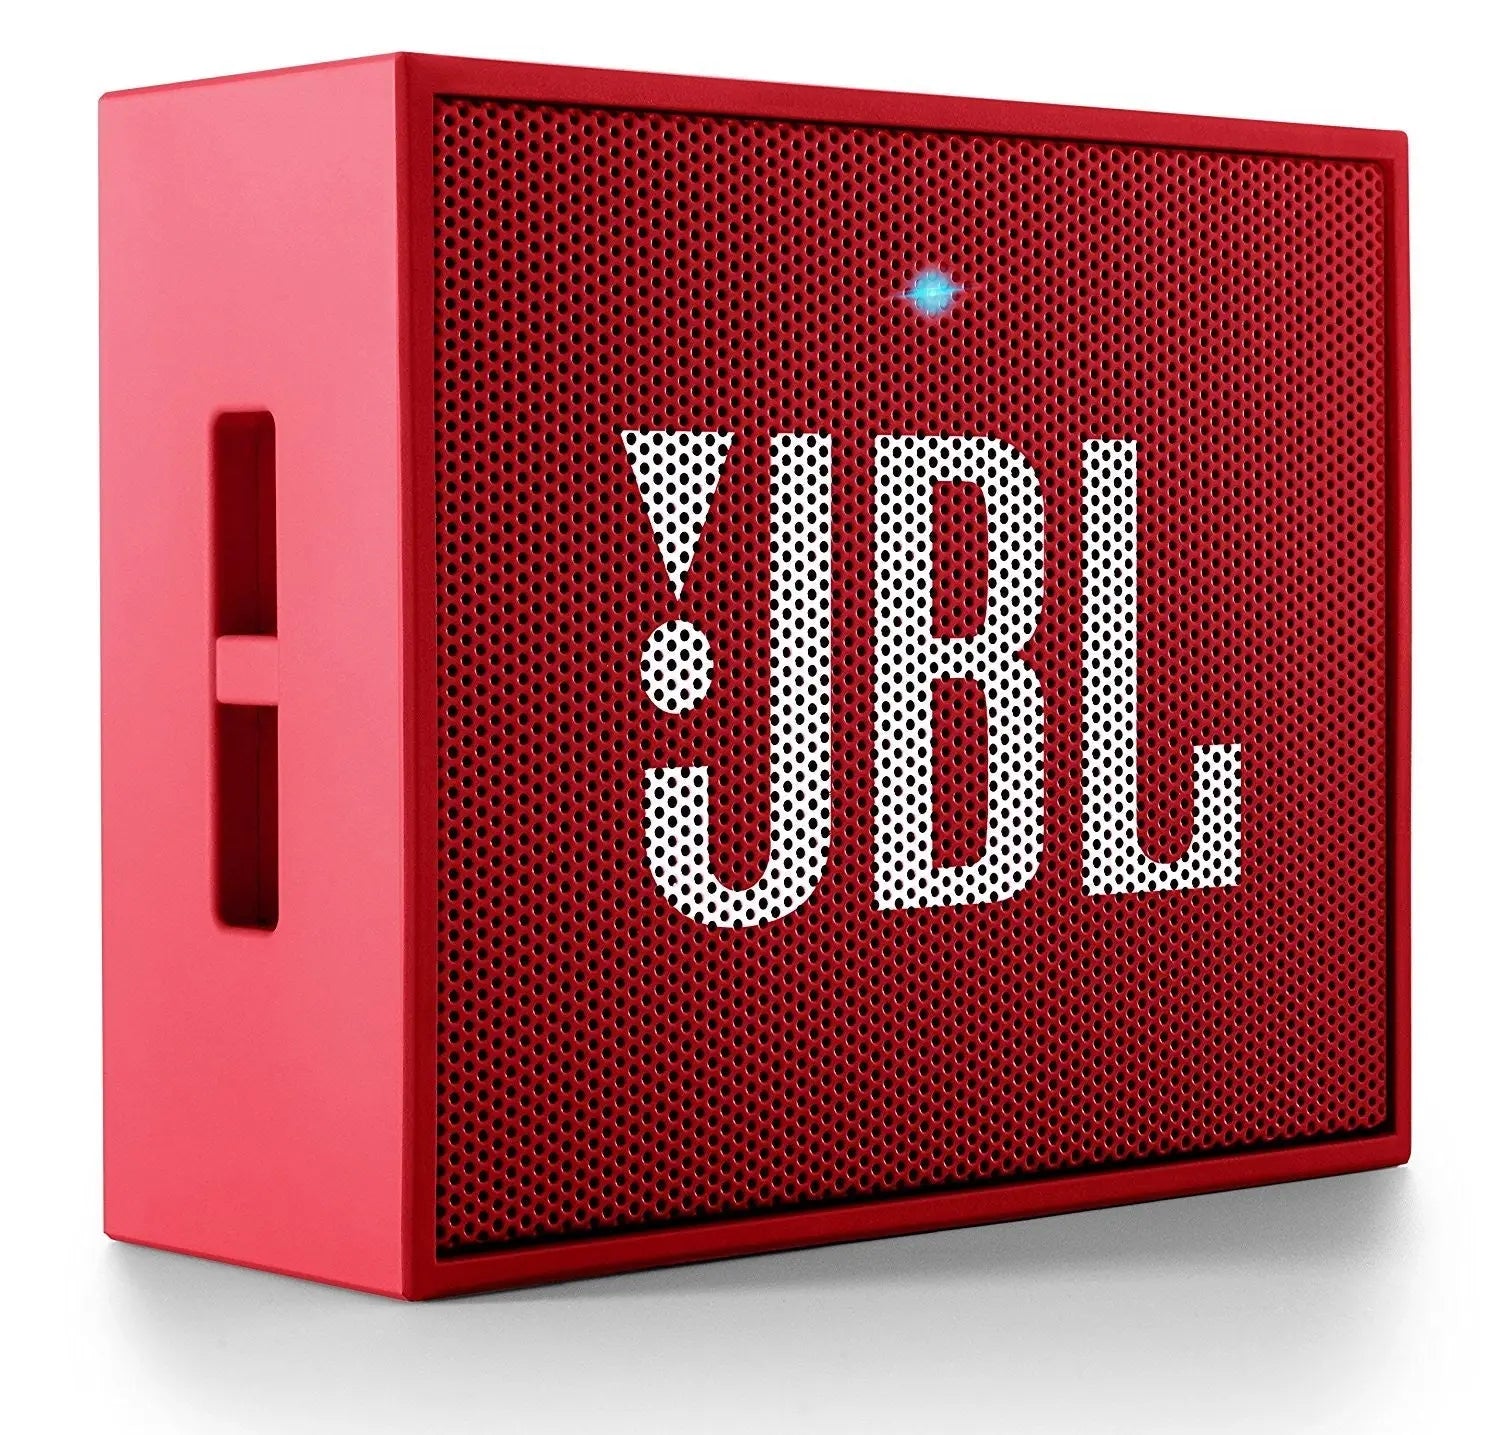 Test : JBL GO, la petite enceinte Bluetooth bon marché au son